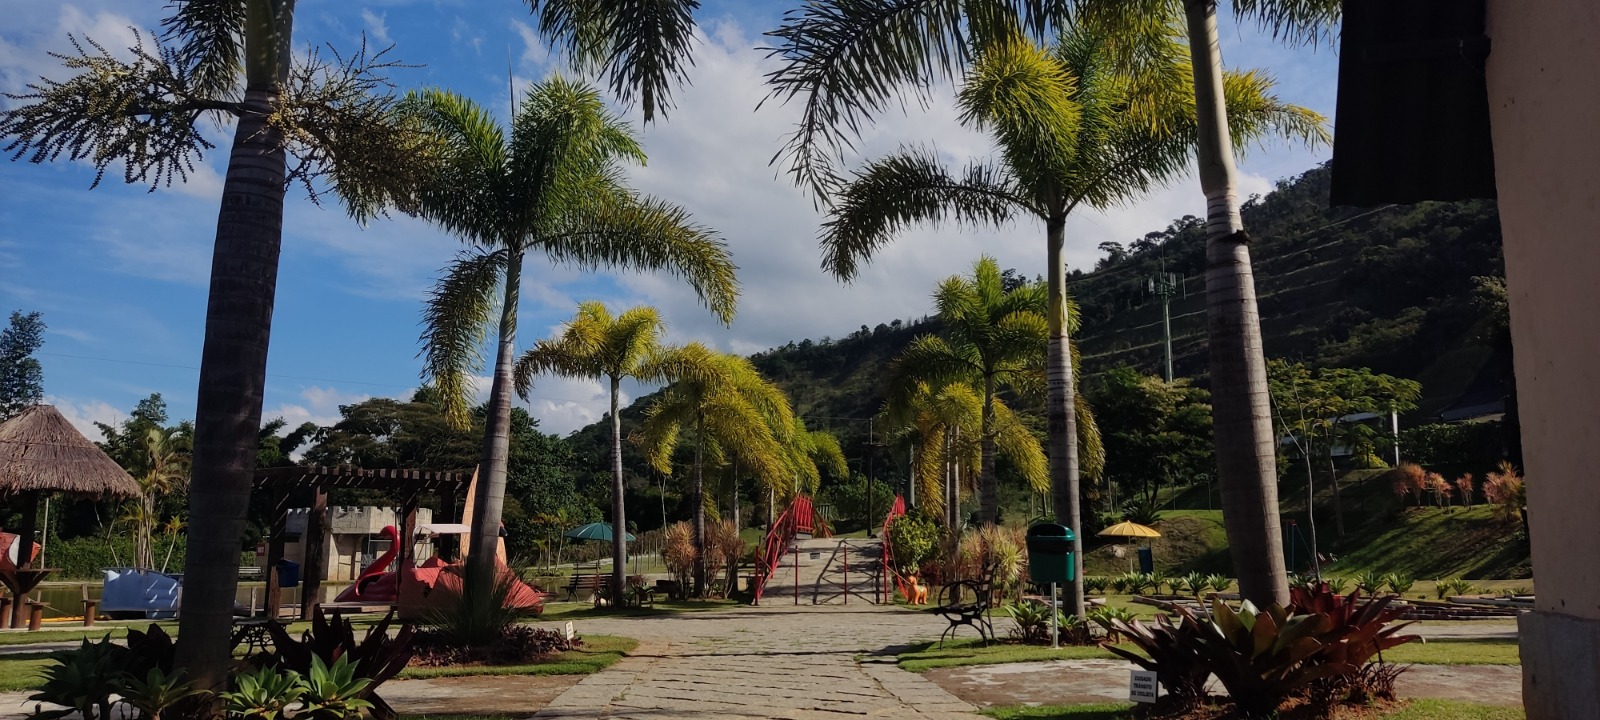 Parque do Castelo de Itaipava oferece várias atrações nos finais de semana